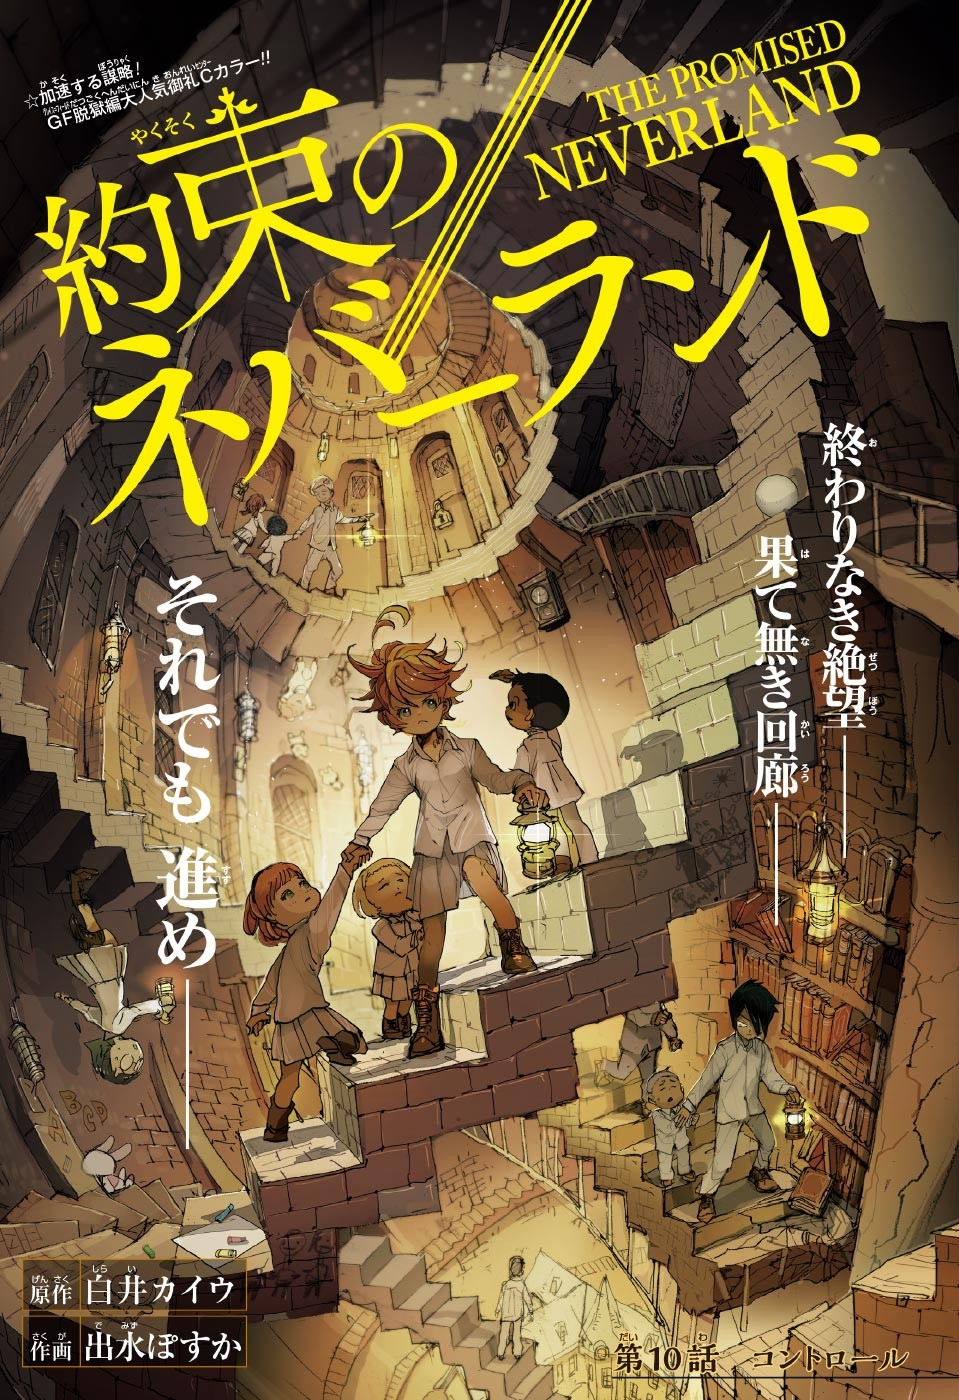 Episódio 10 de The Promised Neverland 2ª temporada: data de lançamento -  Manga Livre RS